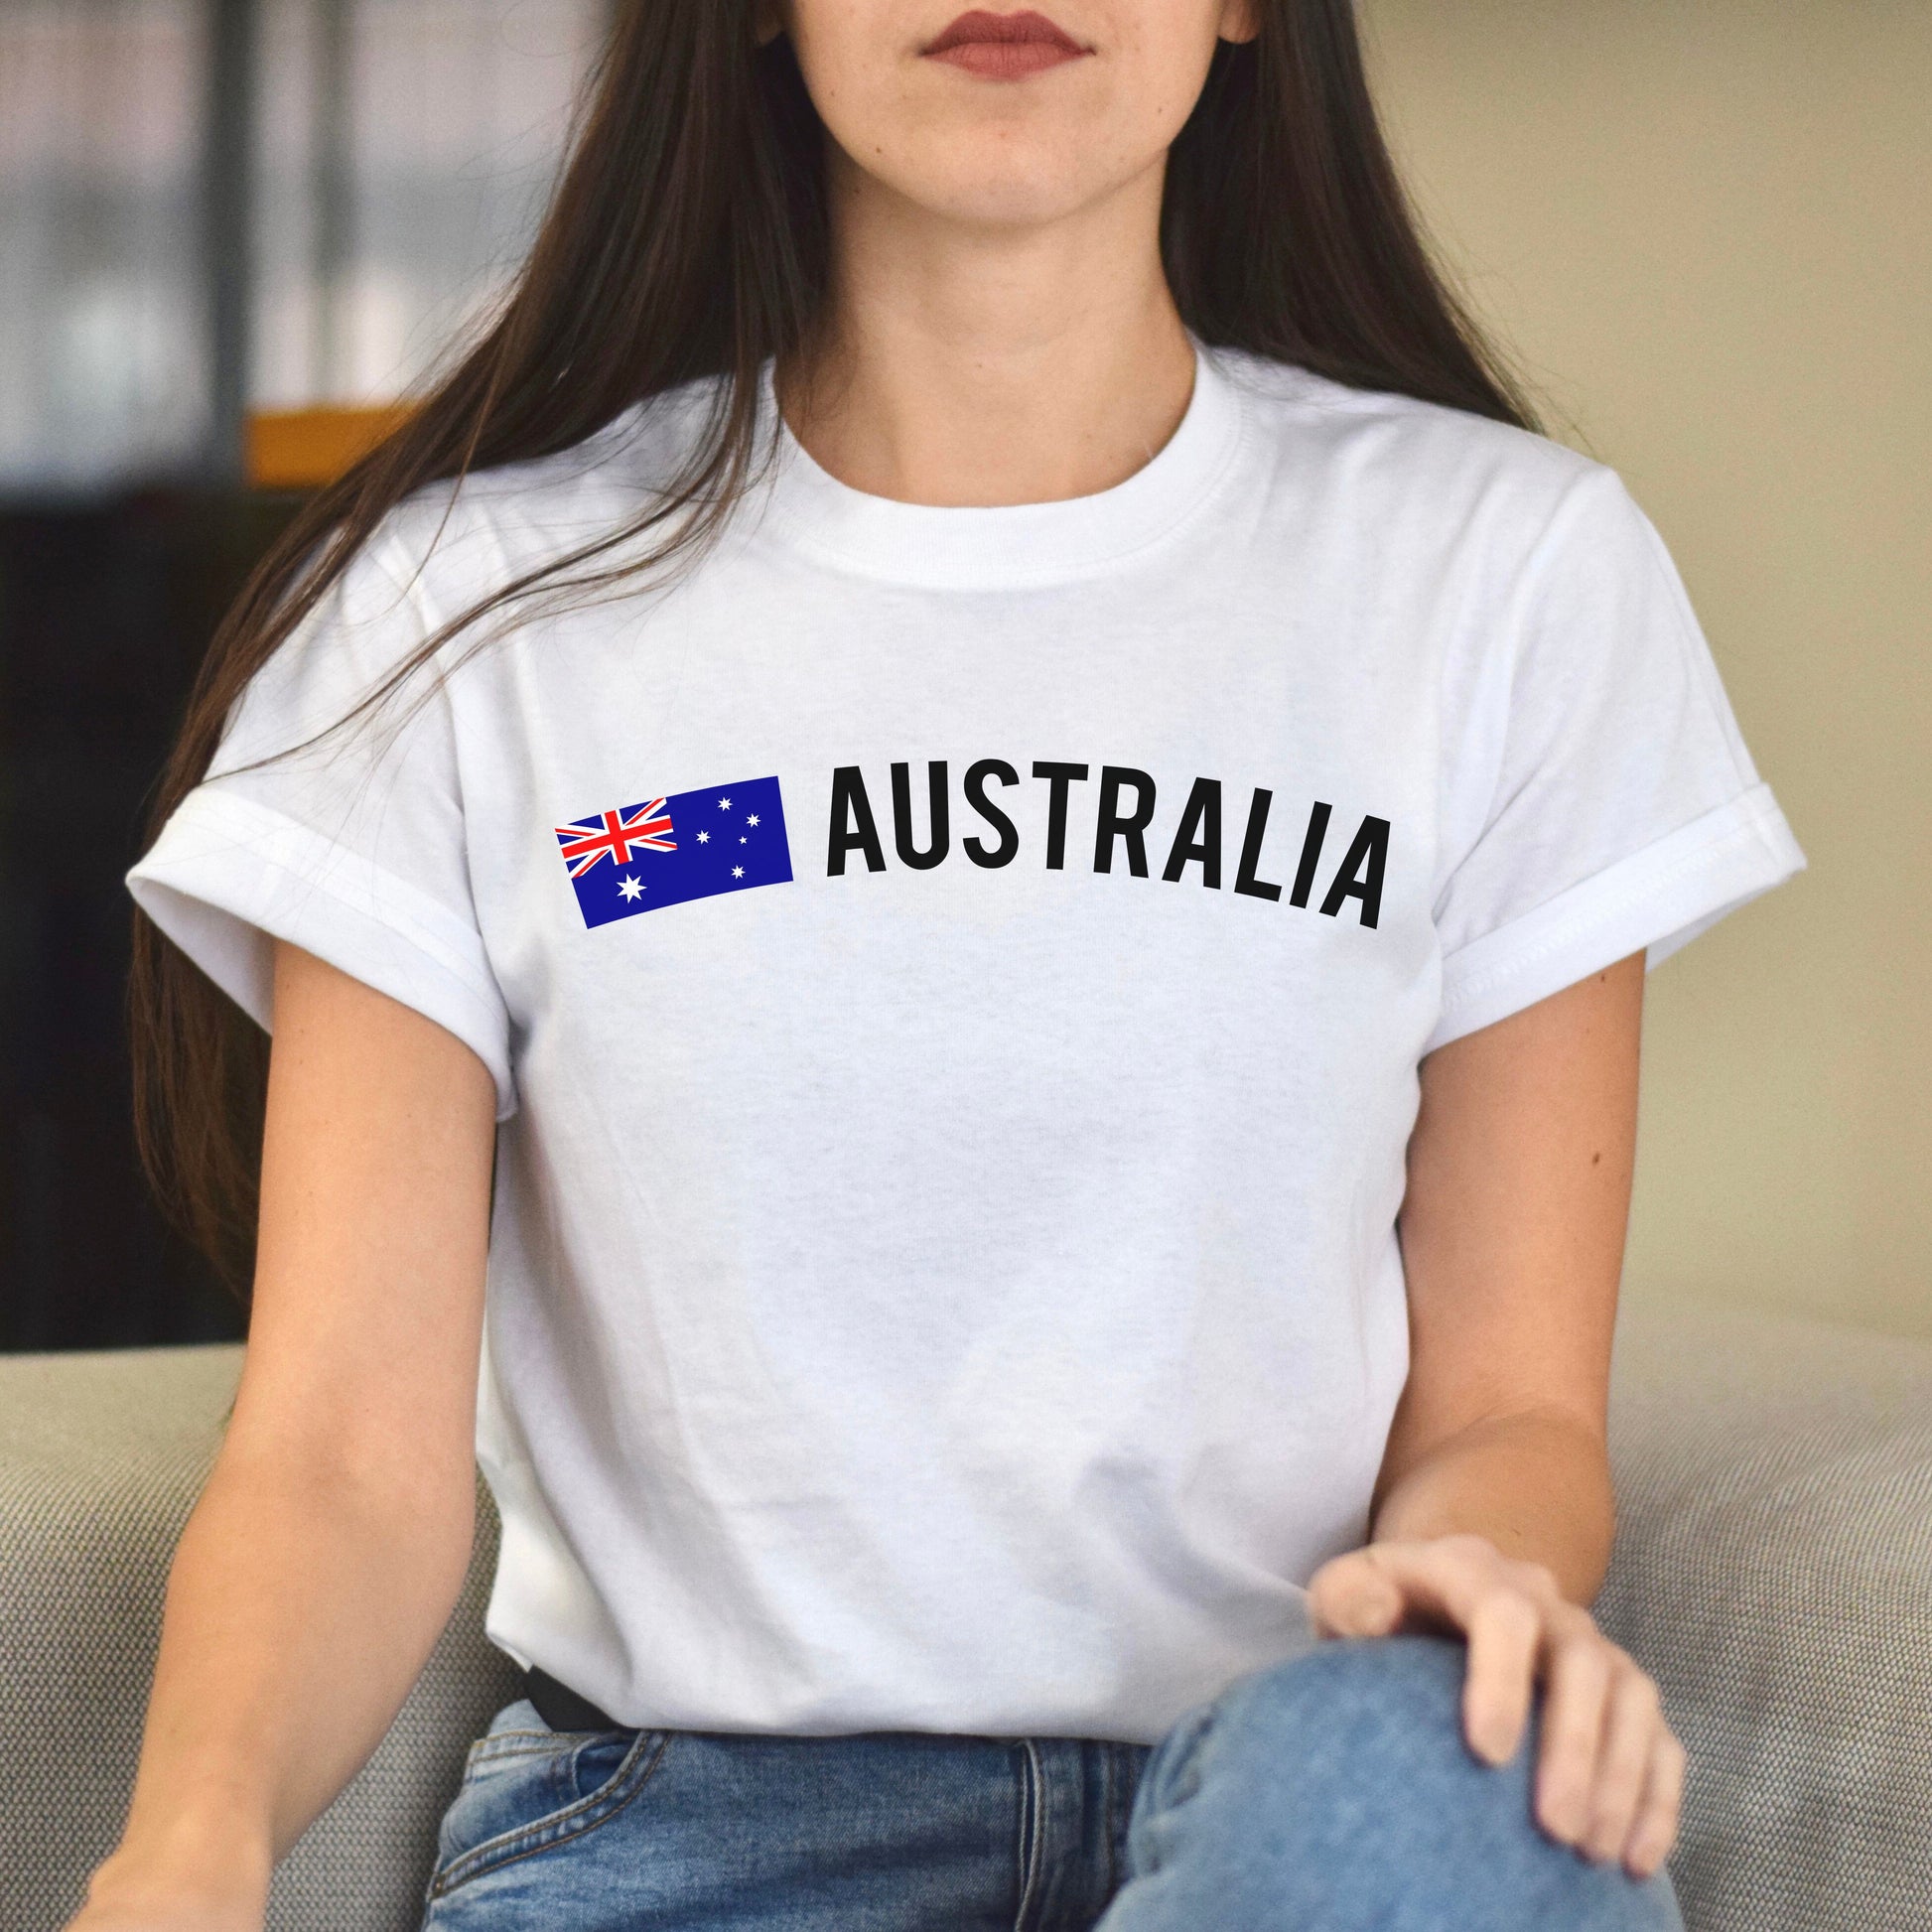 Australia Unisex T-shirt gift Australian flag tee Sydney White Black Dark Heather-White-Family-Gift-Planet